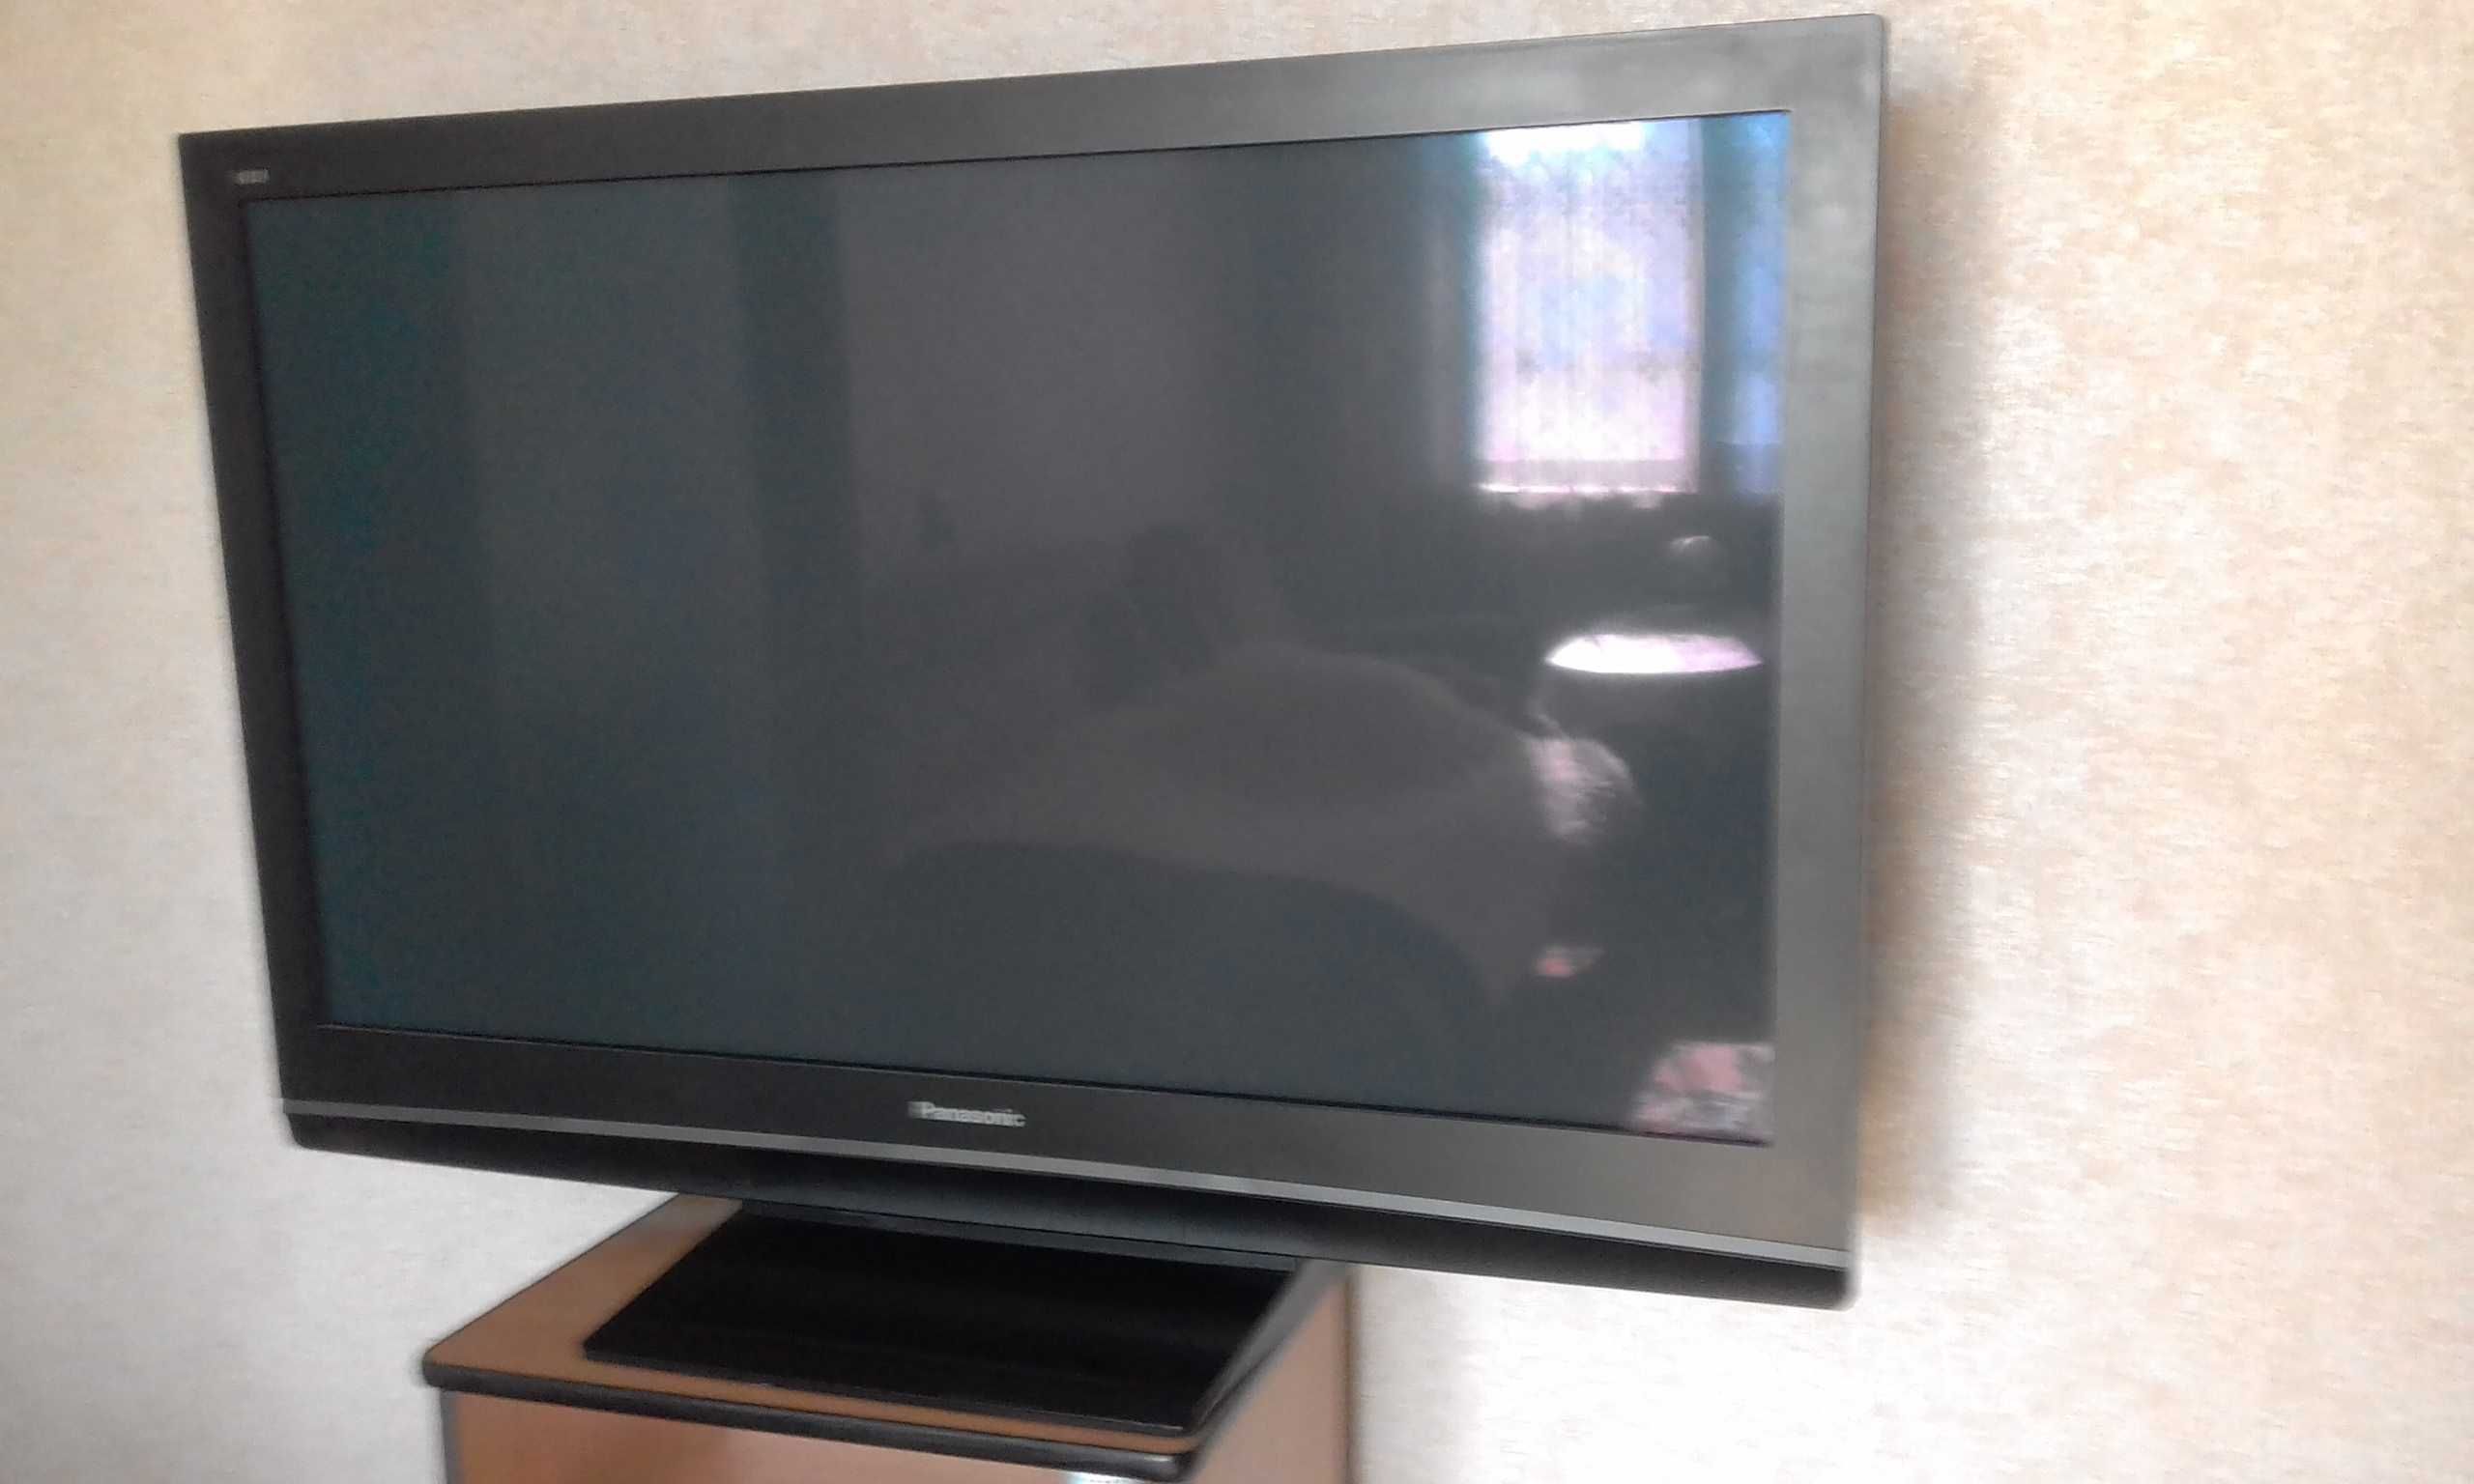 Плазменный телевизор, Panasonic TH-R50PV8, 50 дюймов.